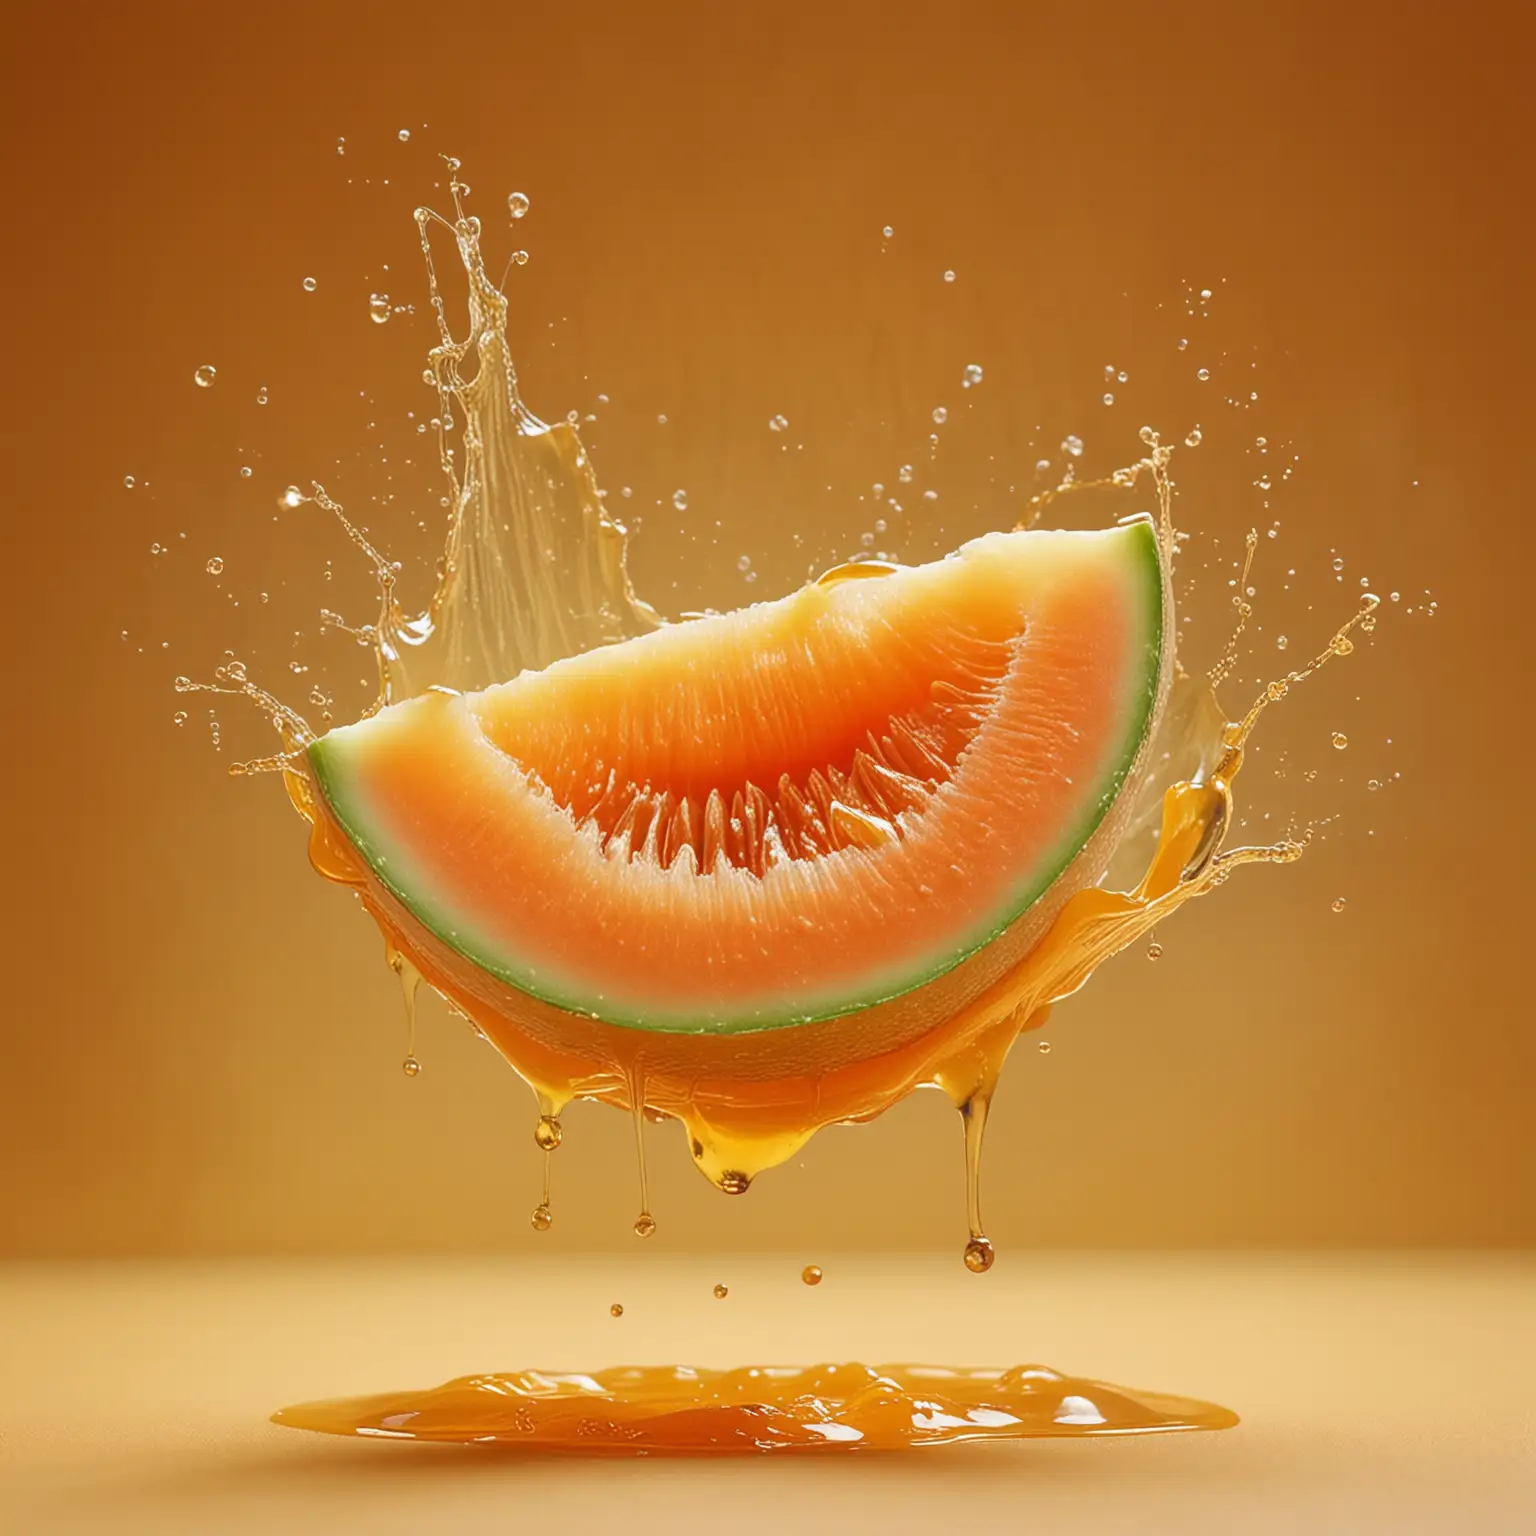 сочная спелая melon карамель  мед на оранжевом фоне брызги сочно